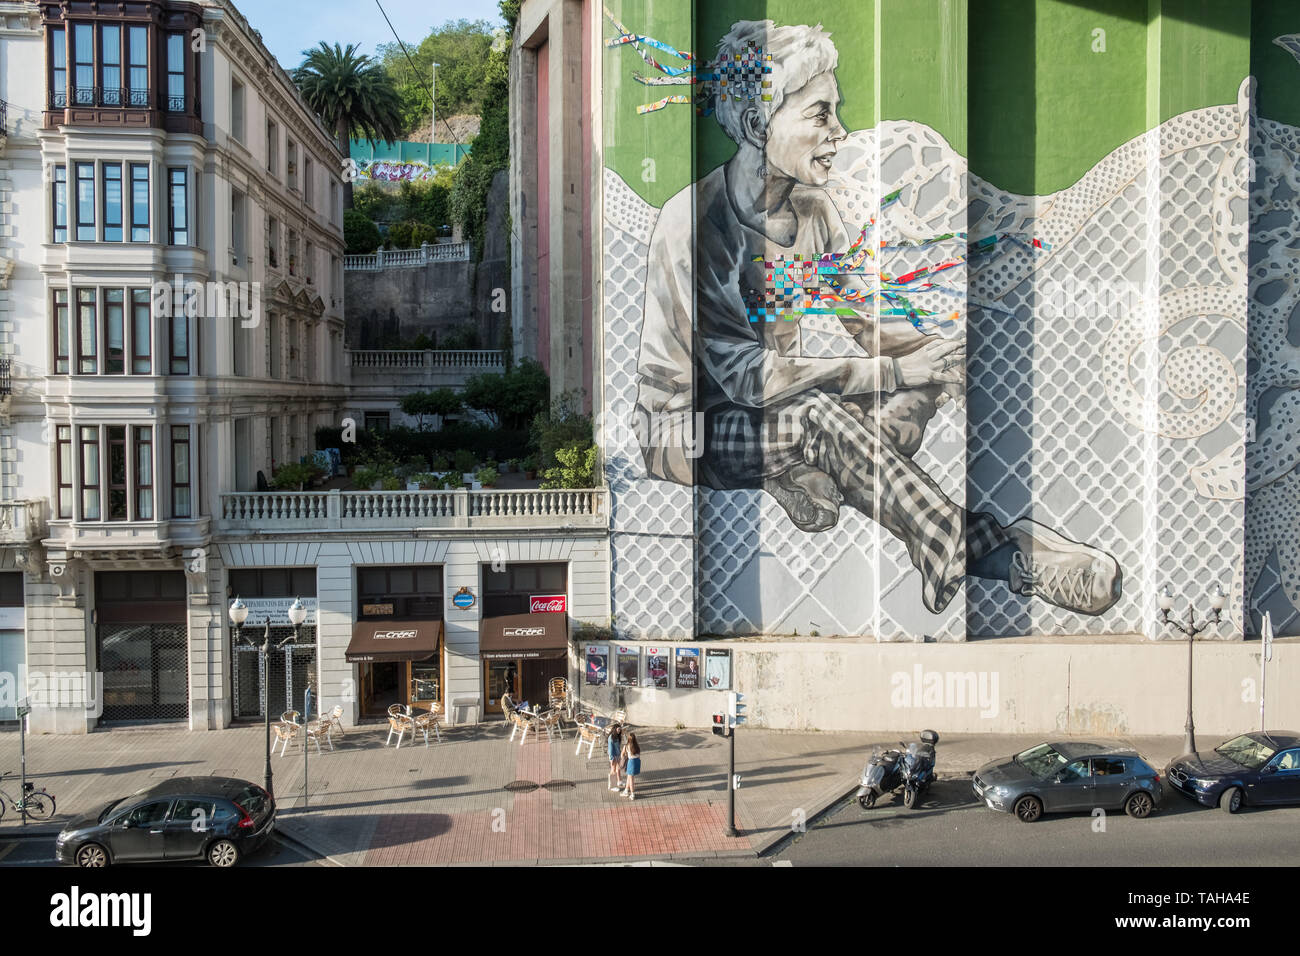 Street art mural à grande échelle sur le côté du bâtiment, Bilbao, Pays Basque, Espagne Banque D'Images